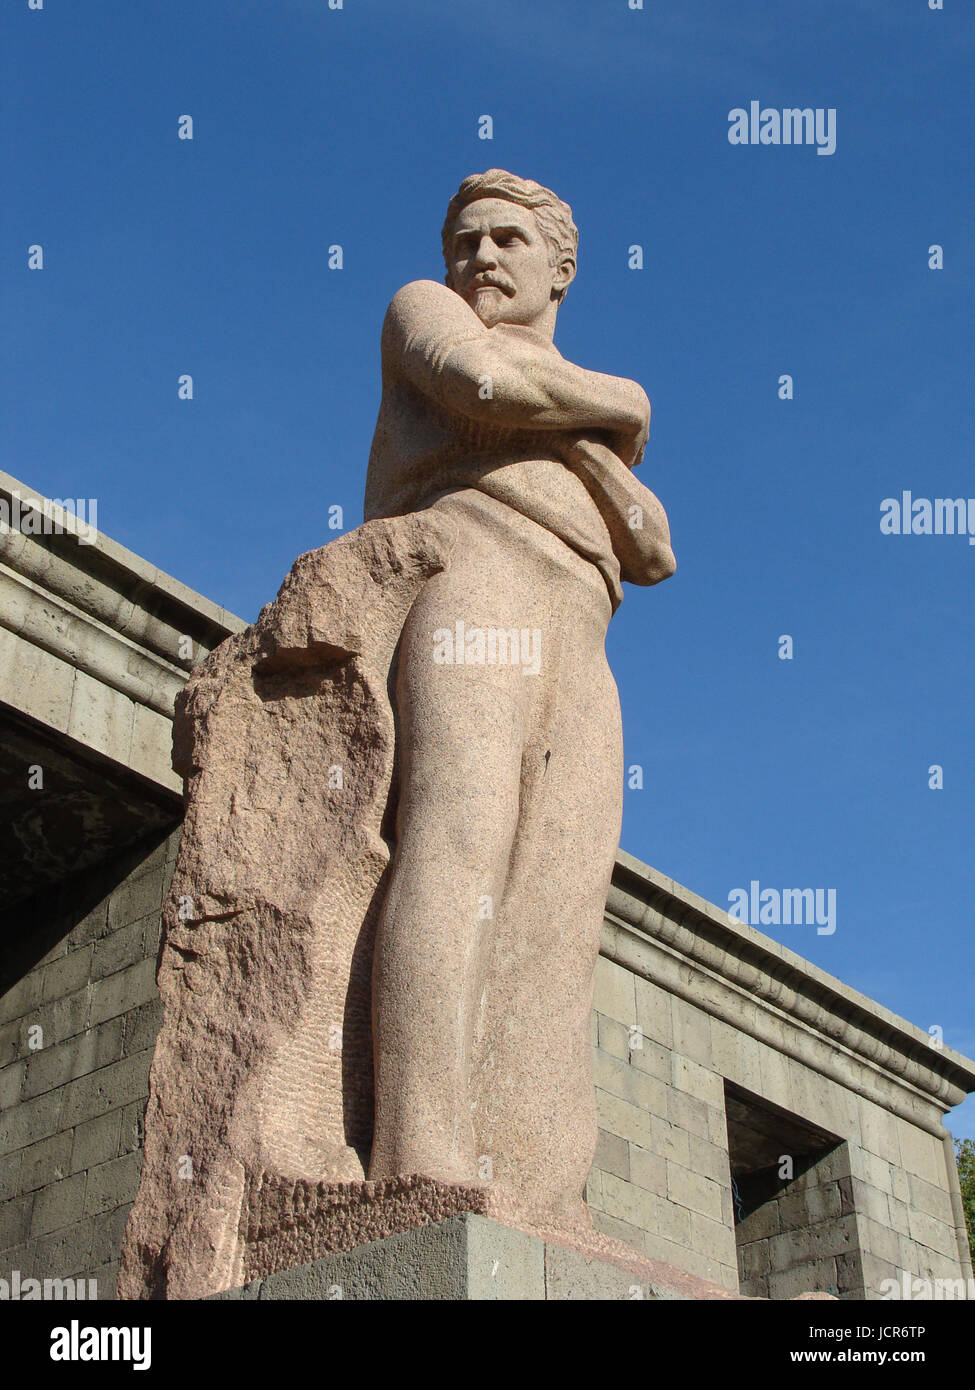 Monument to Stepan Shaumyan in Yerevan, Armenia Stock Photo